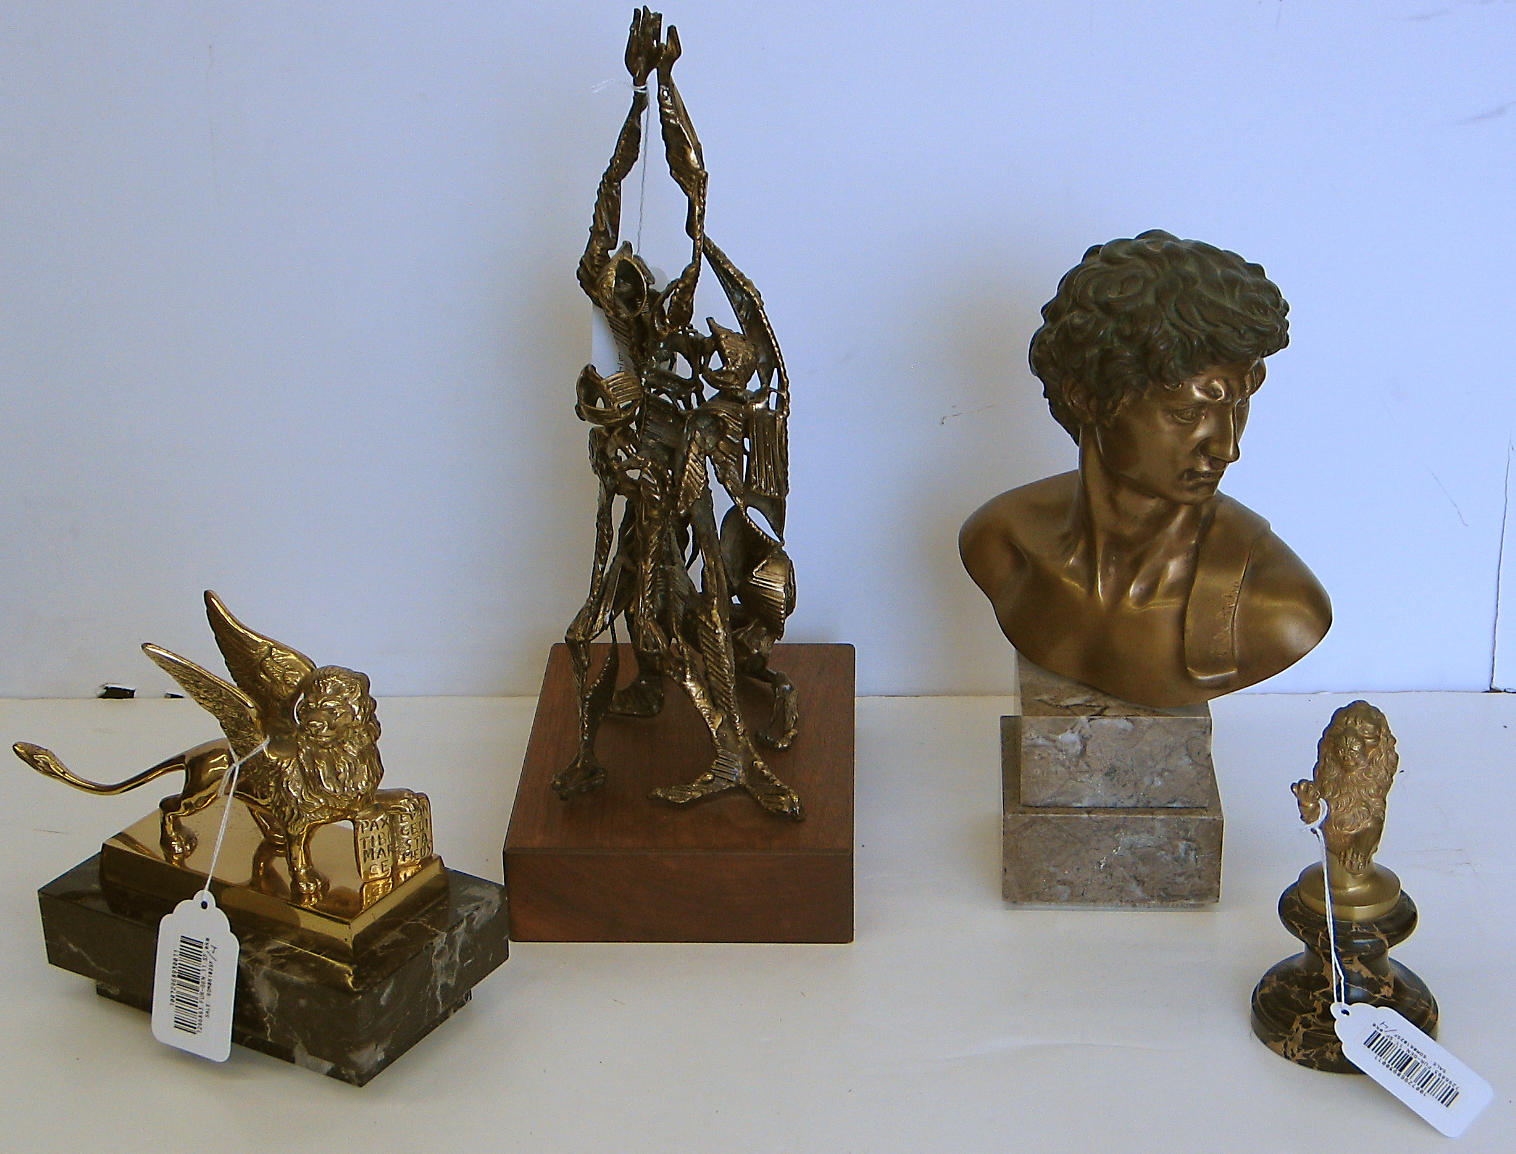 An assembled grouping of bronze sculpture